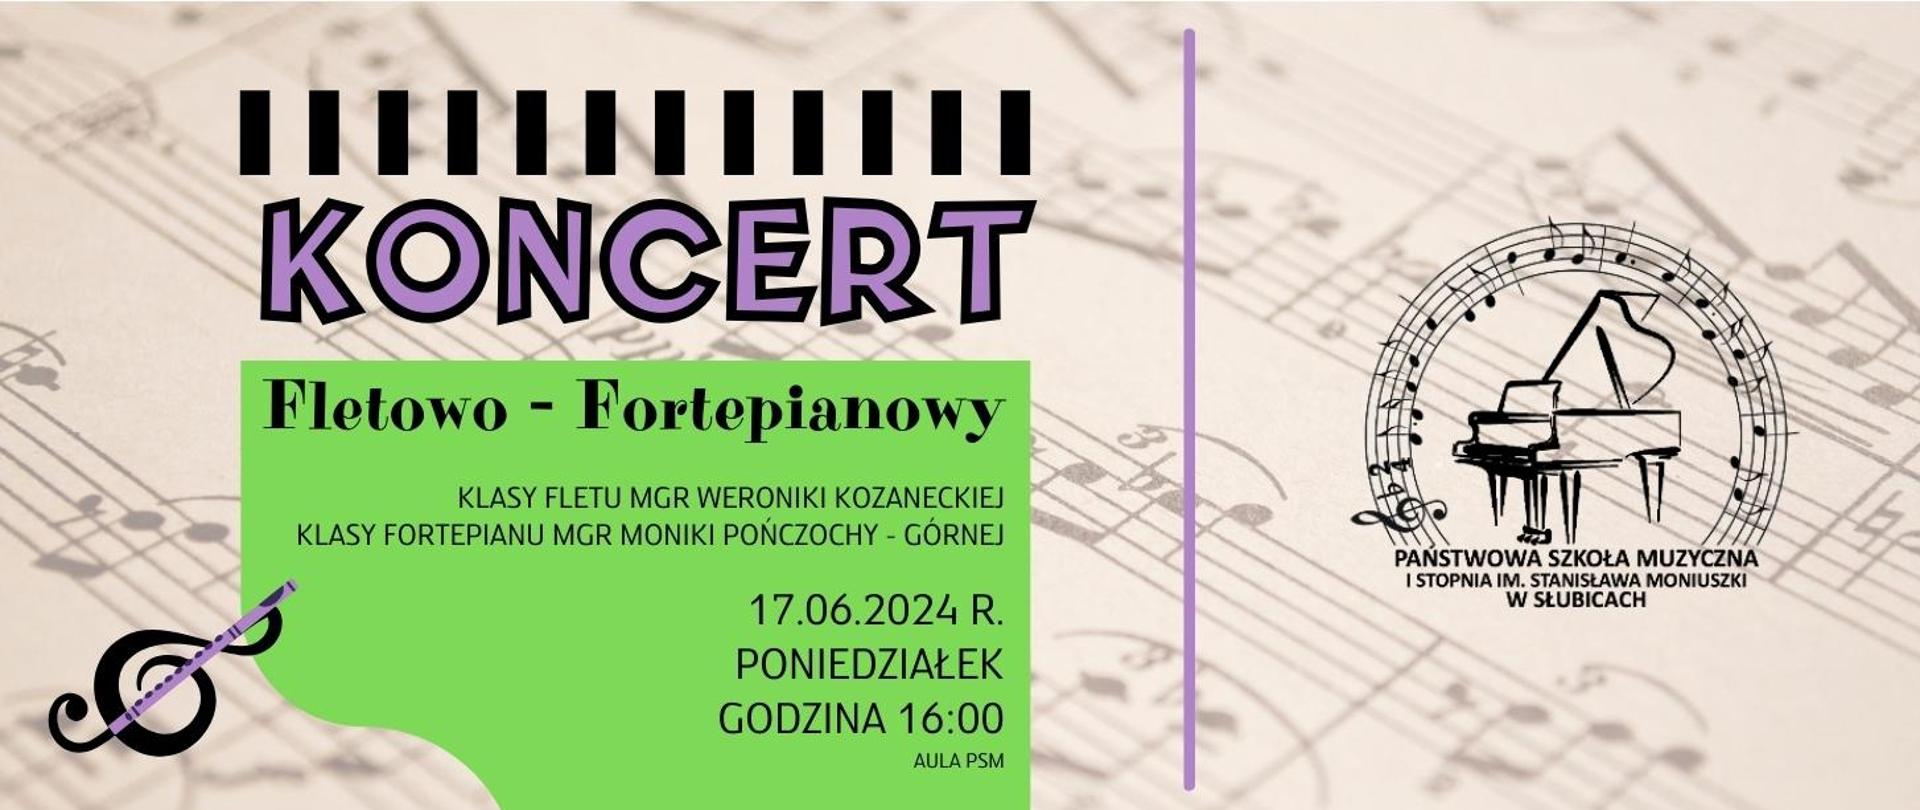 Baner zapowiadający koncert fletowo - fortepianowy w dniu 17.06.2024r. godz. 16.00.